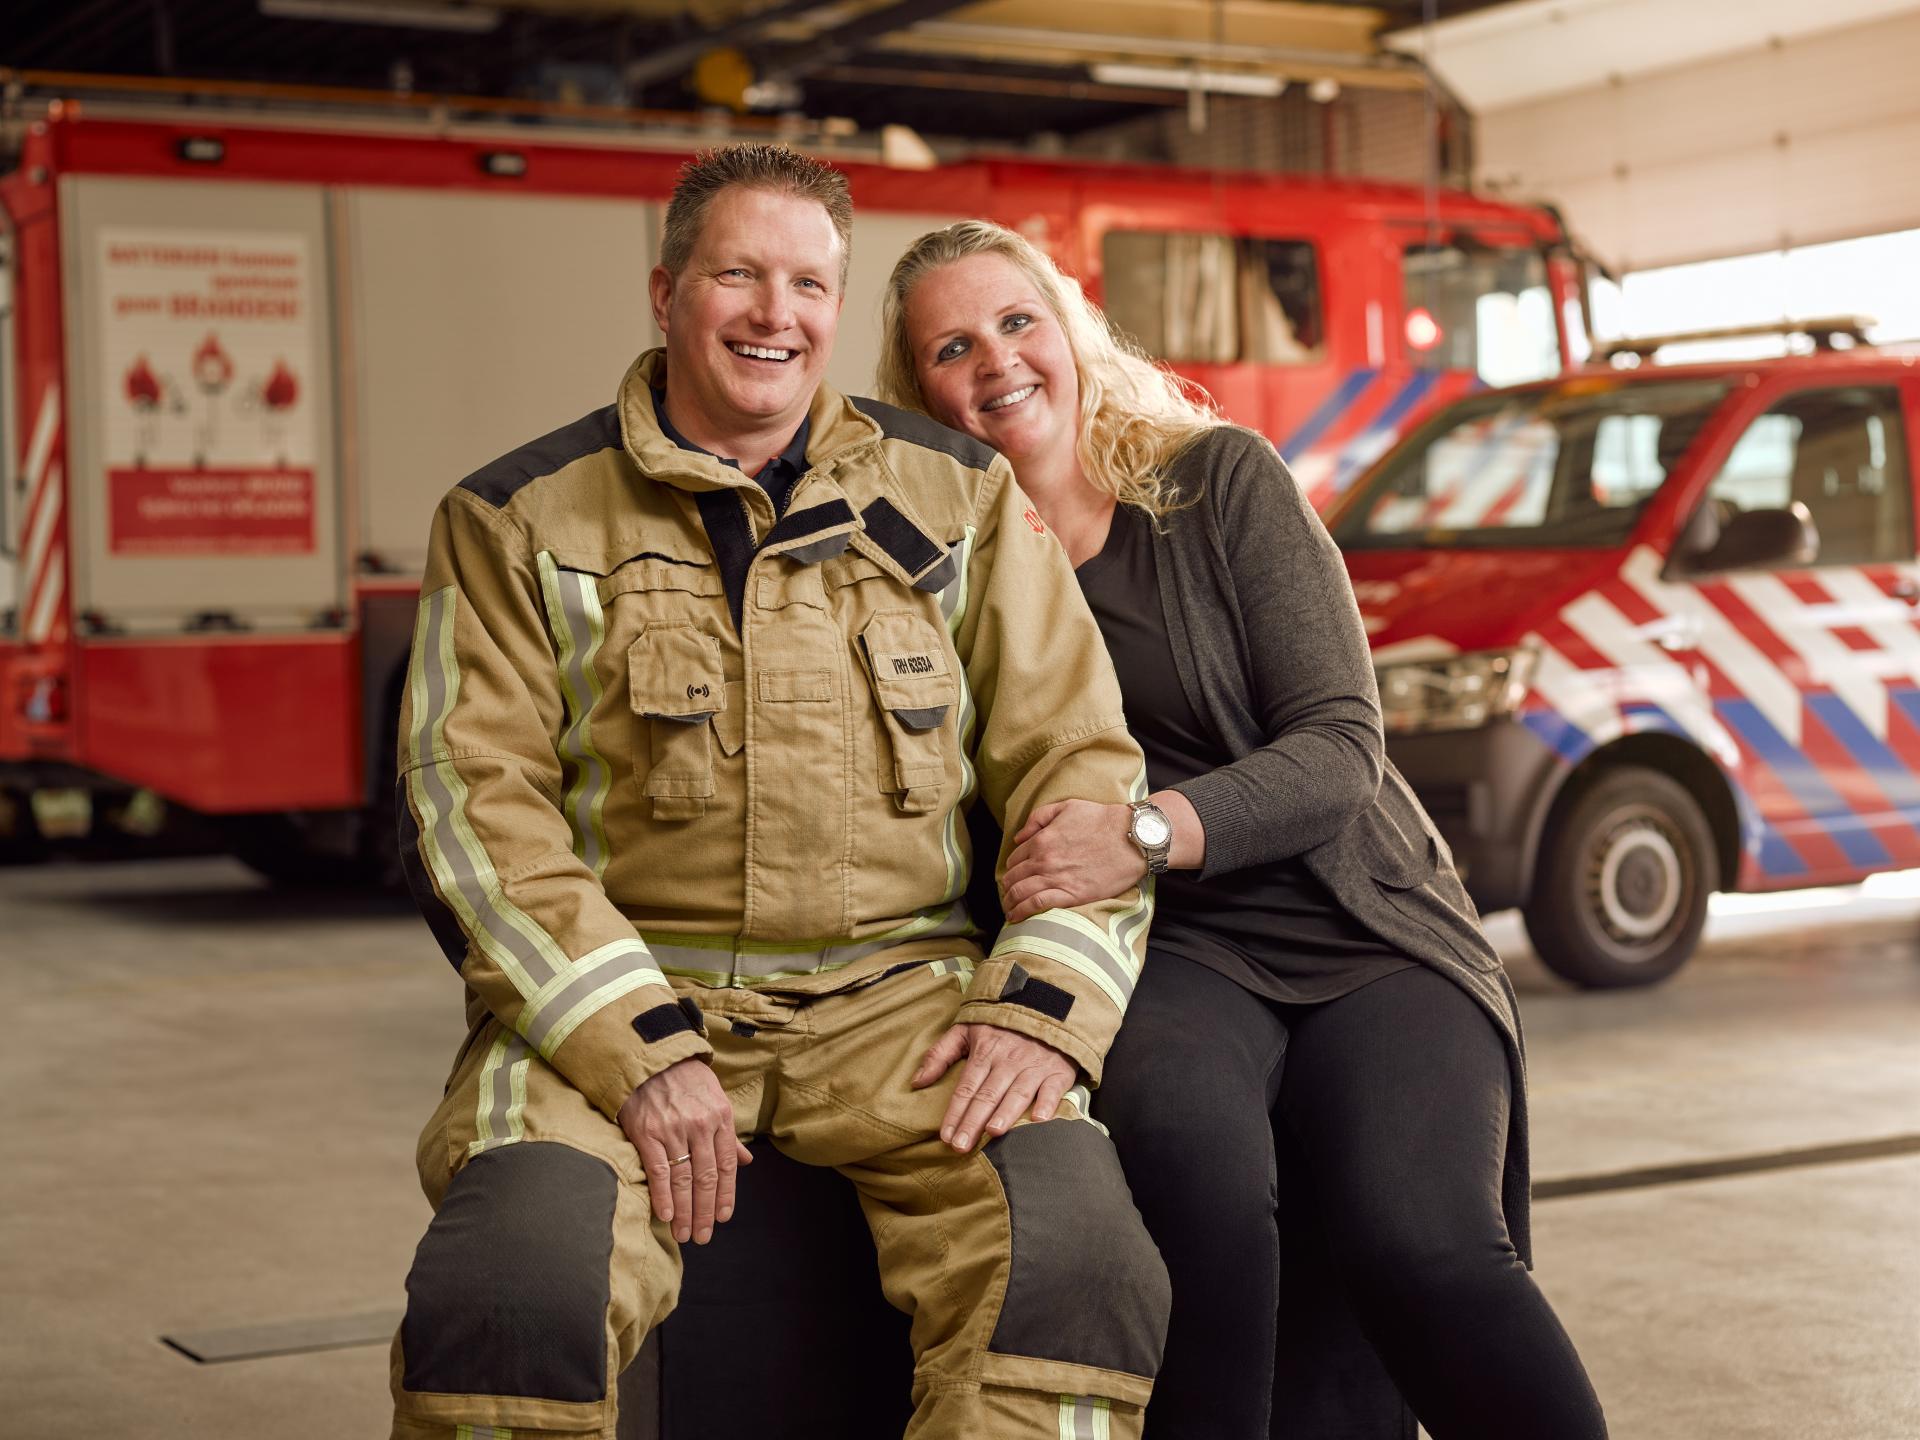 Brandweervrijwilliger Pascal samen met zijn vrouw Annika